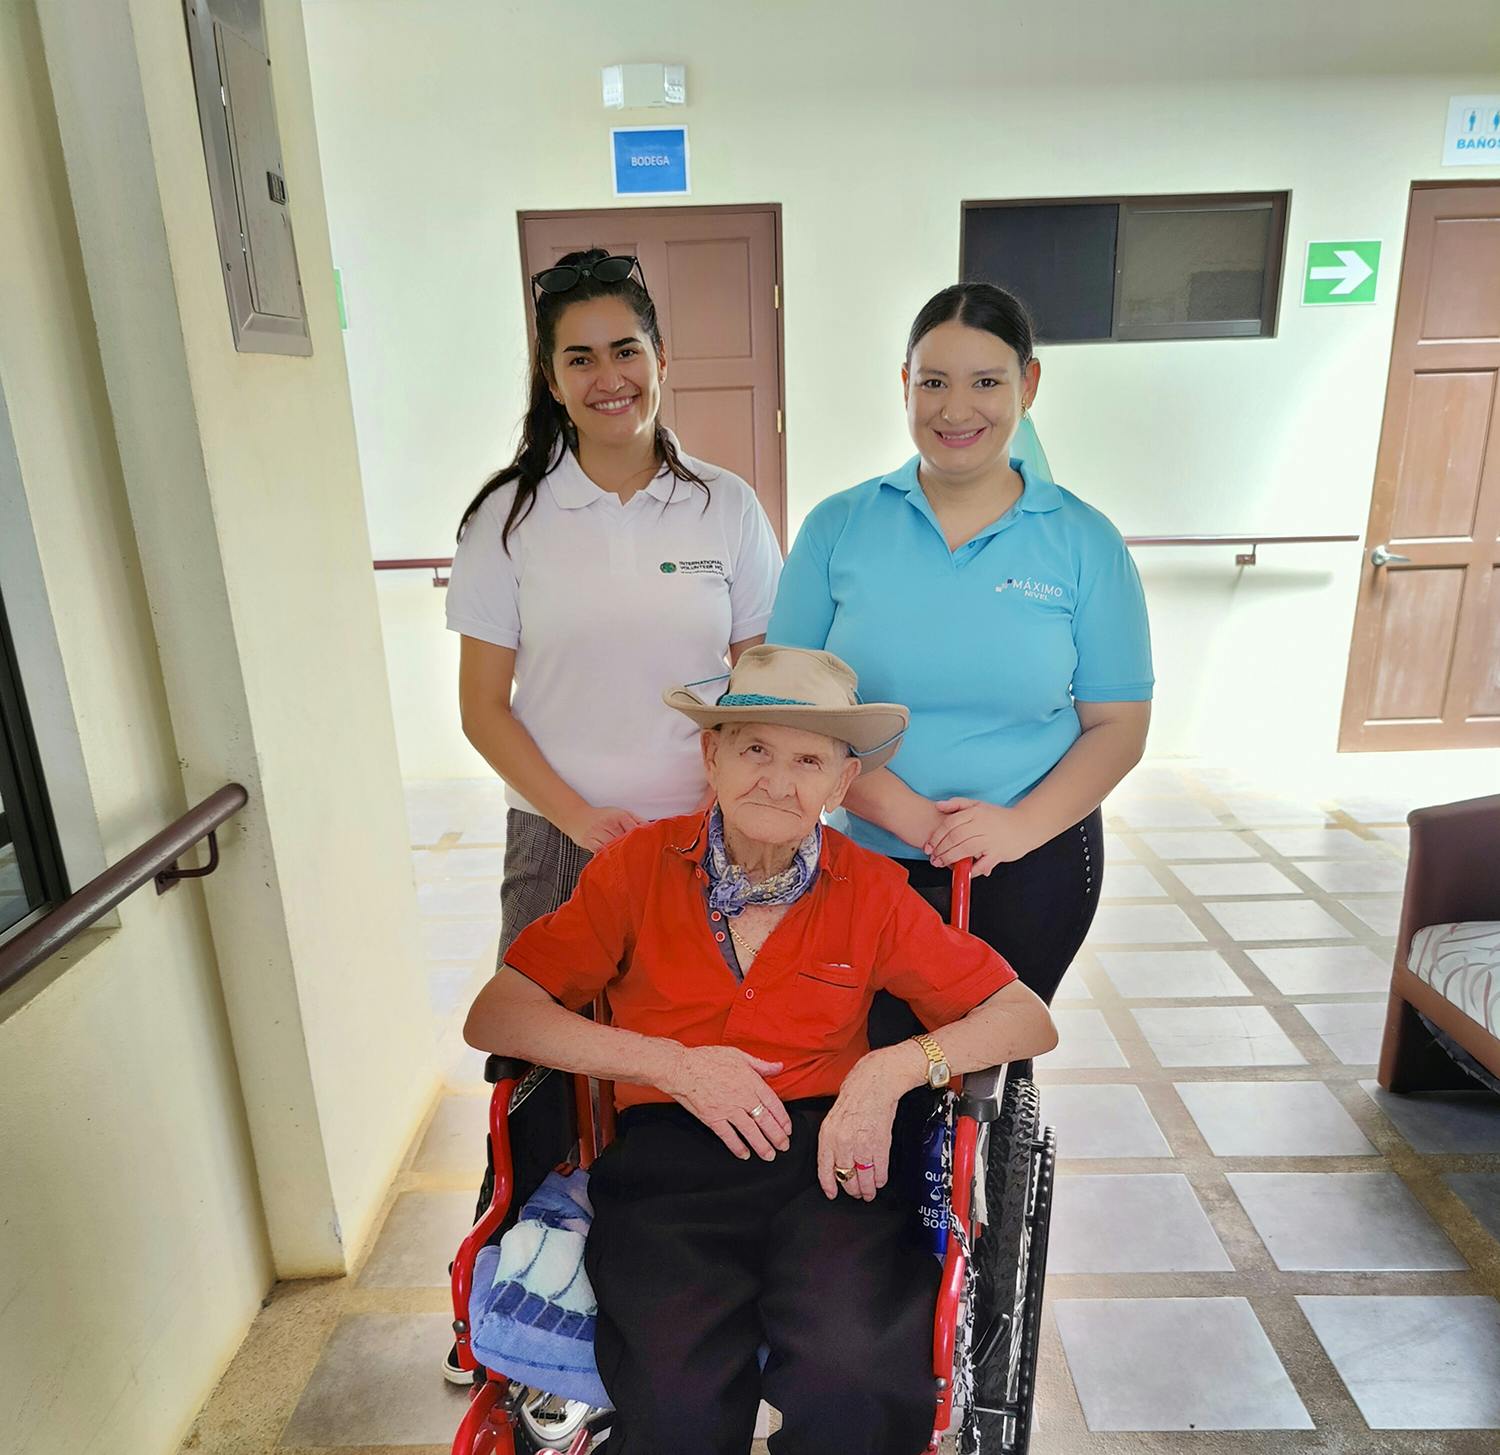 Healthcare Volunteer Project in Costa Rica - Manuel Antonio